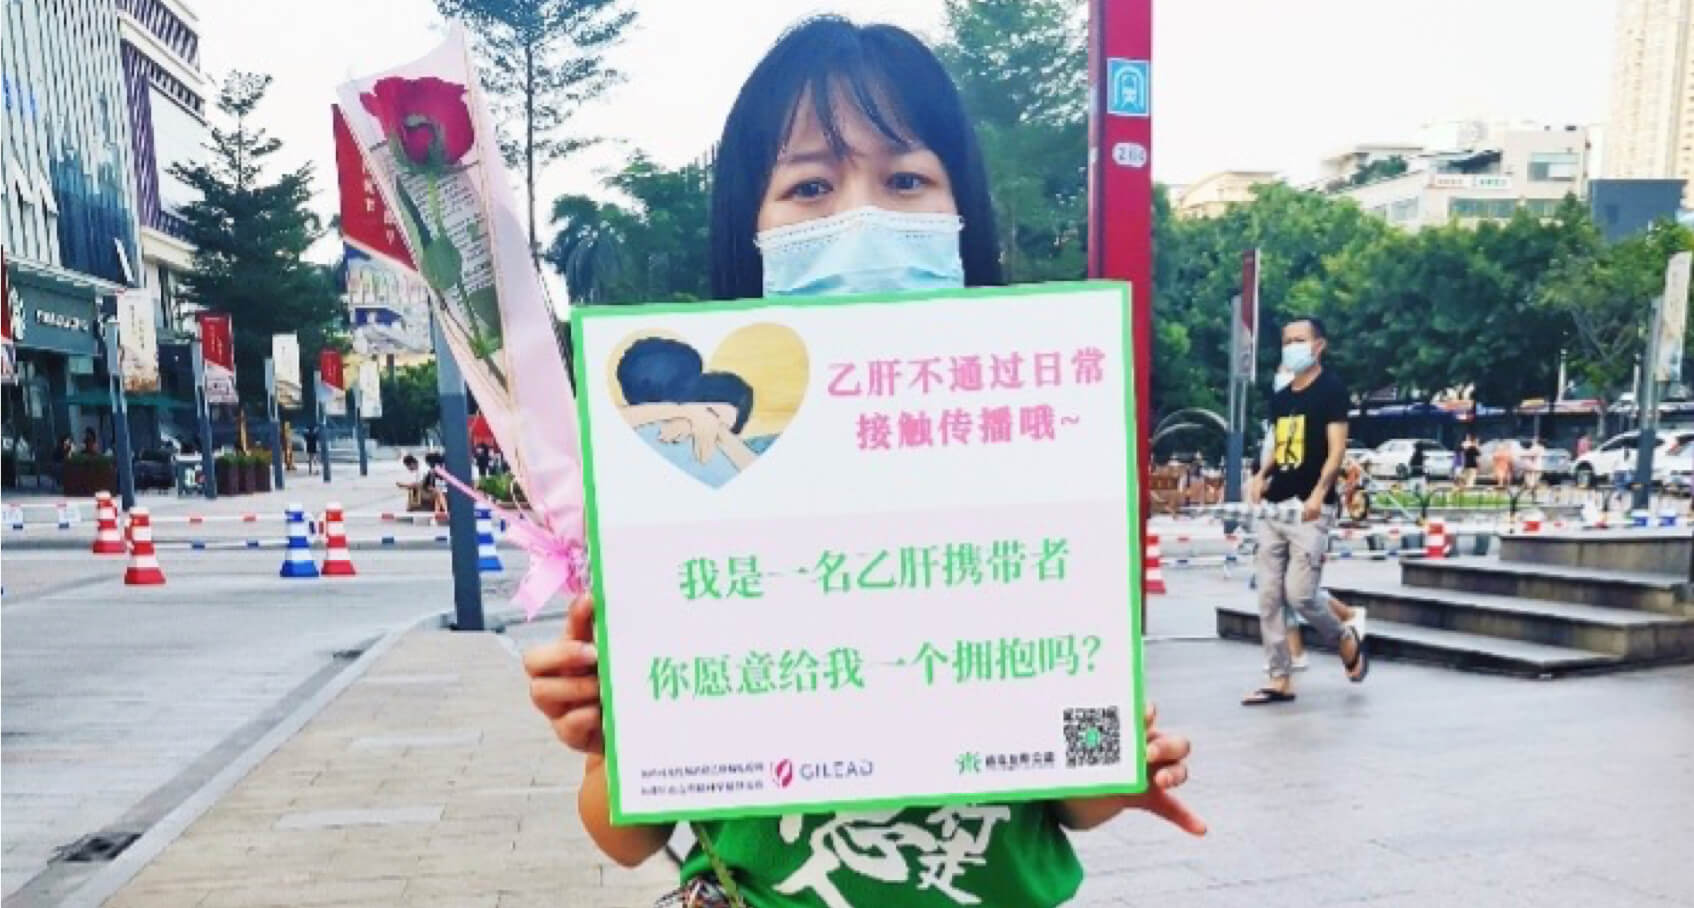 HBV anti-discrimination event in Guangzhou, 2020